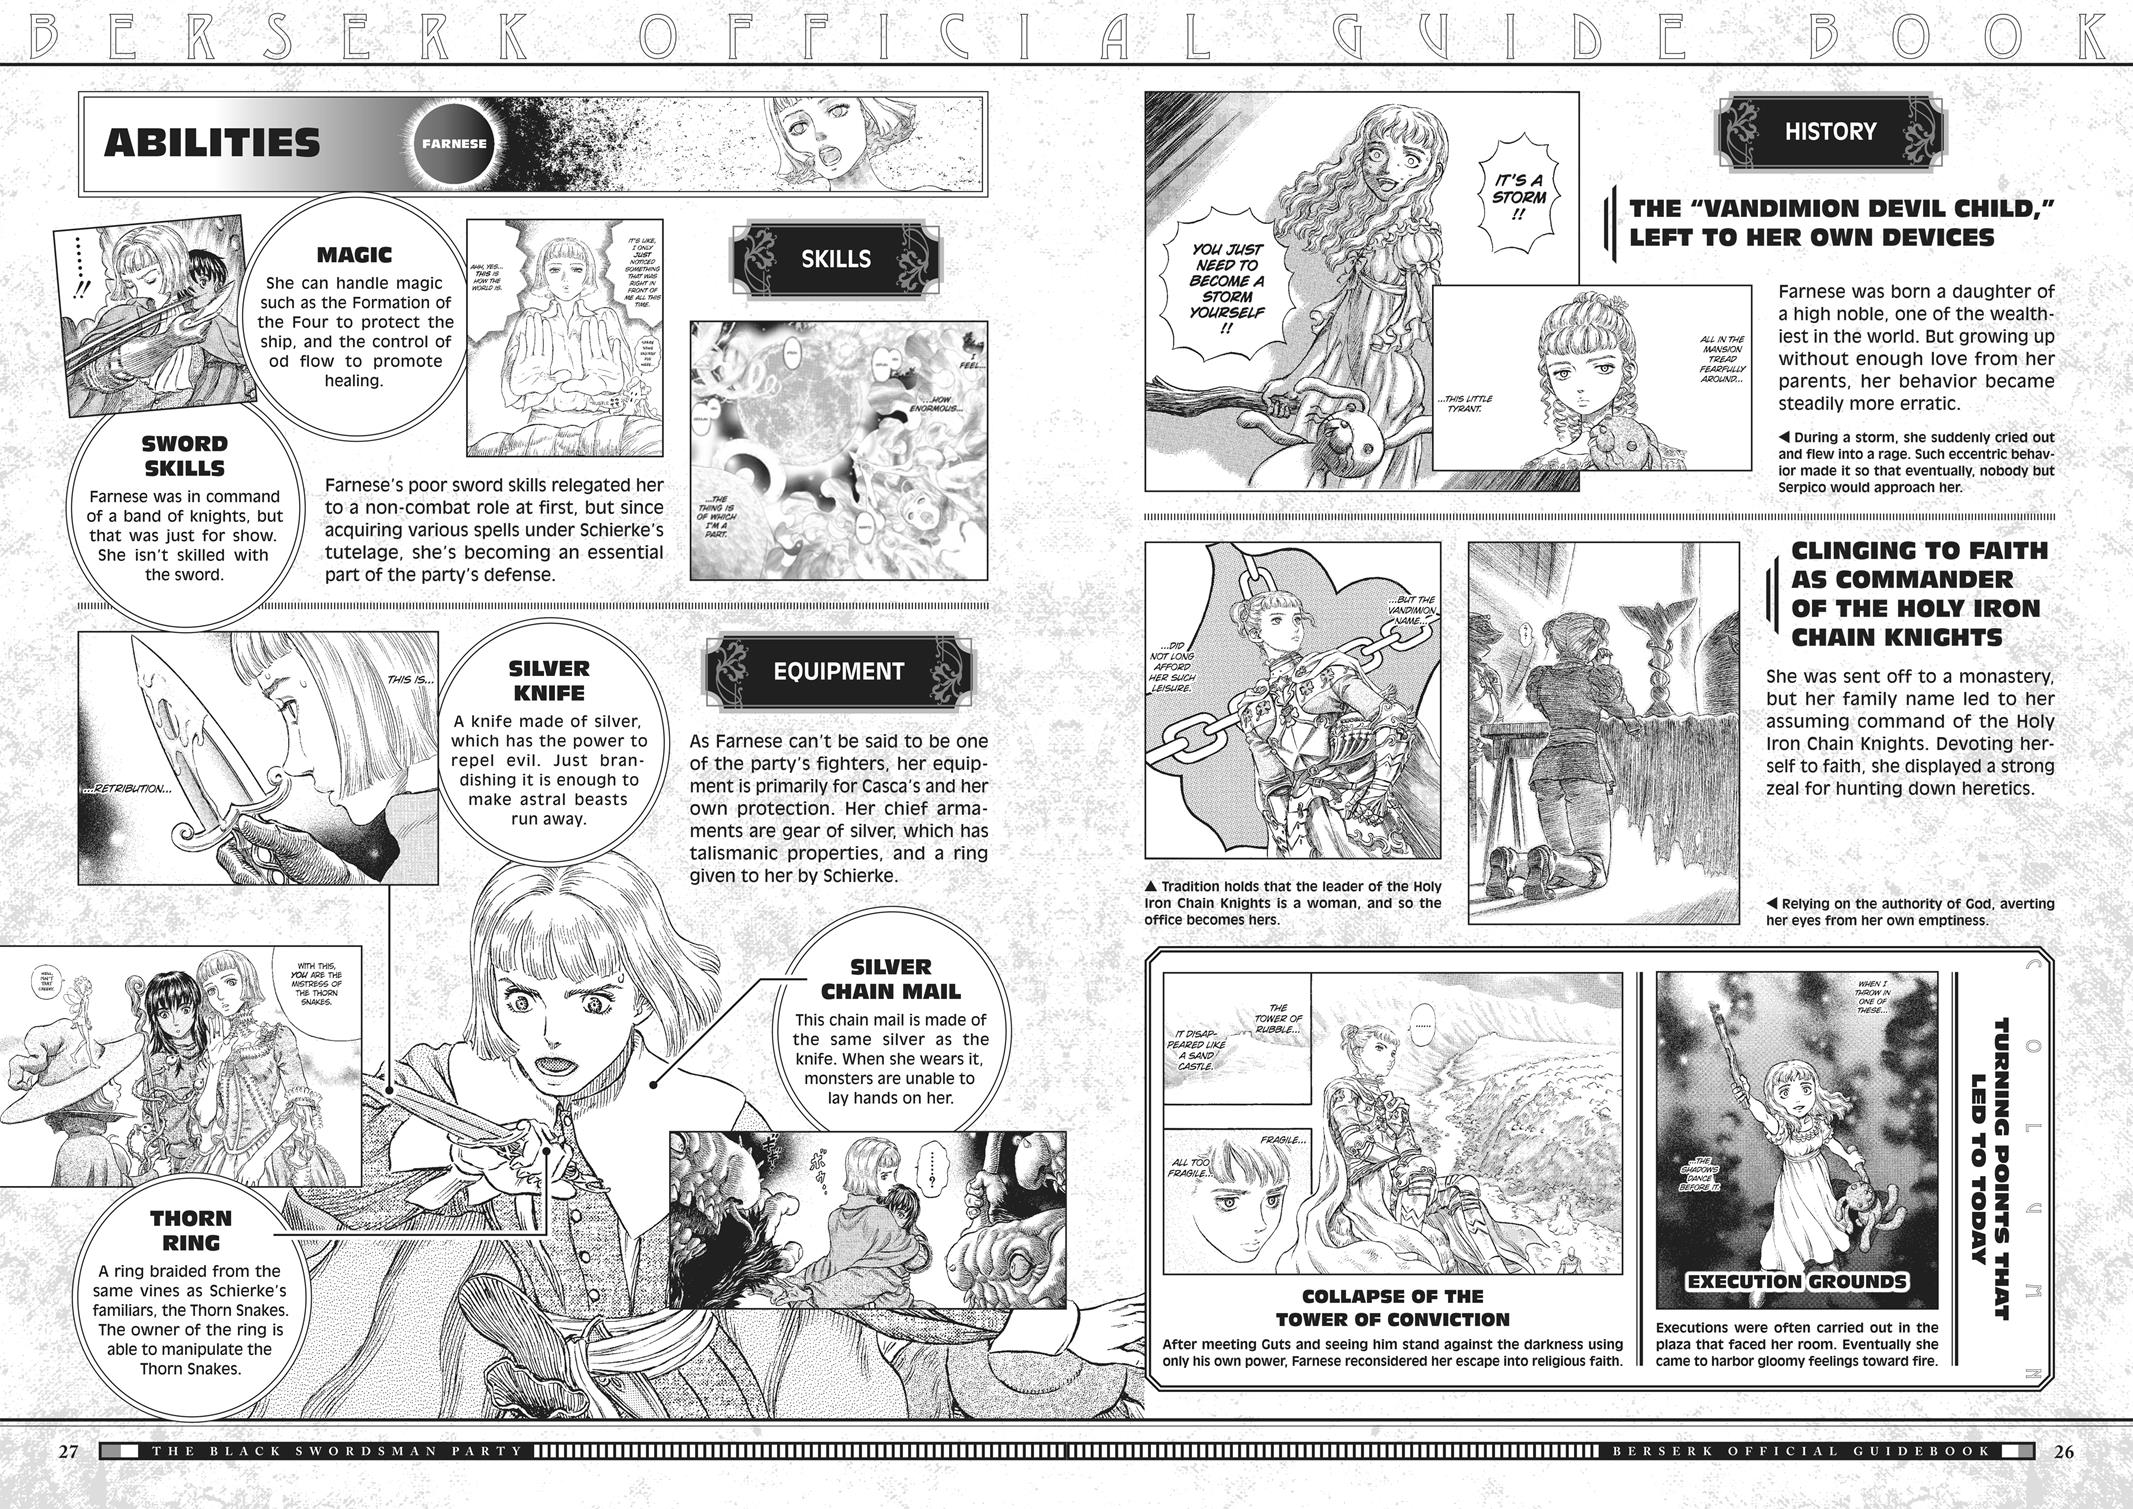 Berserk Manga Chapter 350.5 image 027